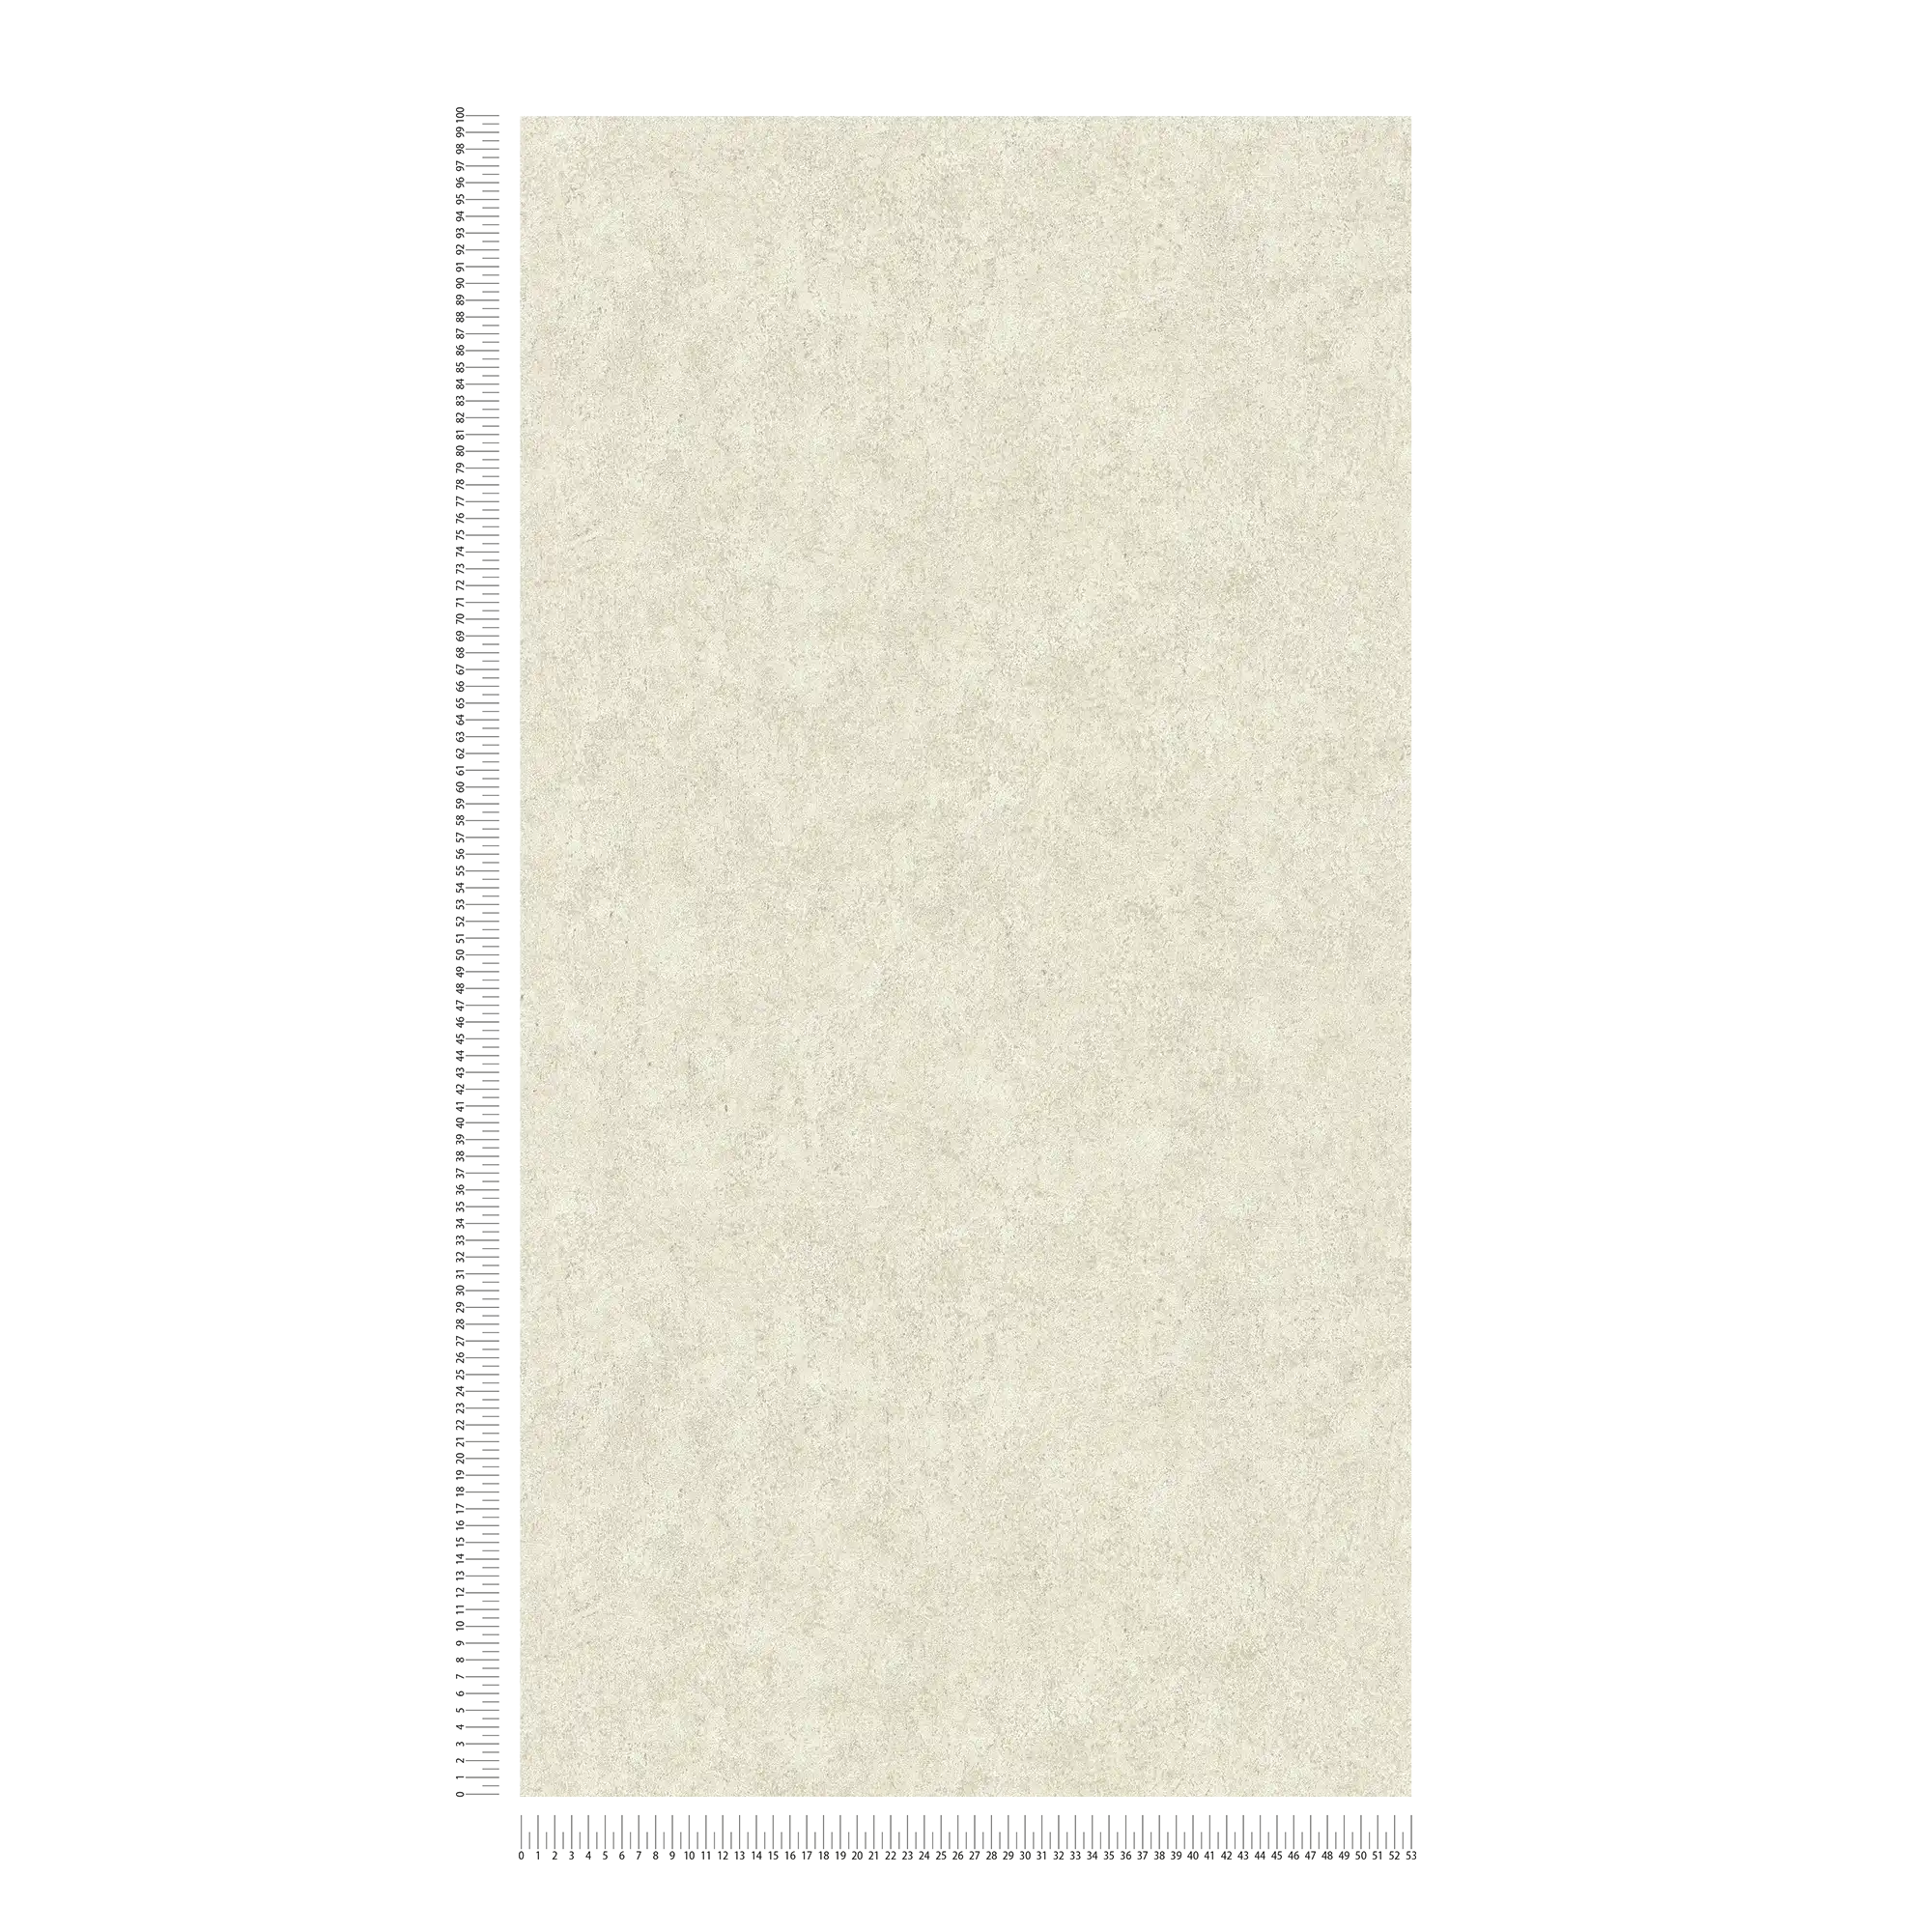             Papier peint uni beige, satiné avec structure crépi
        